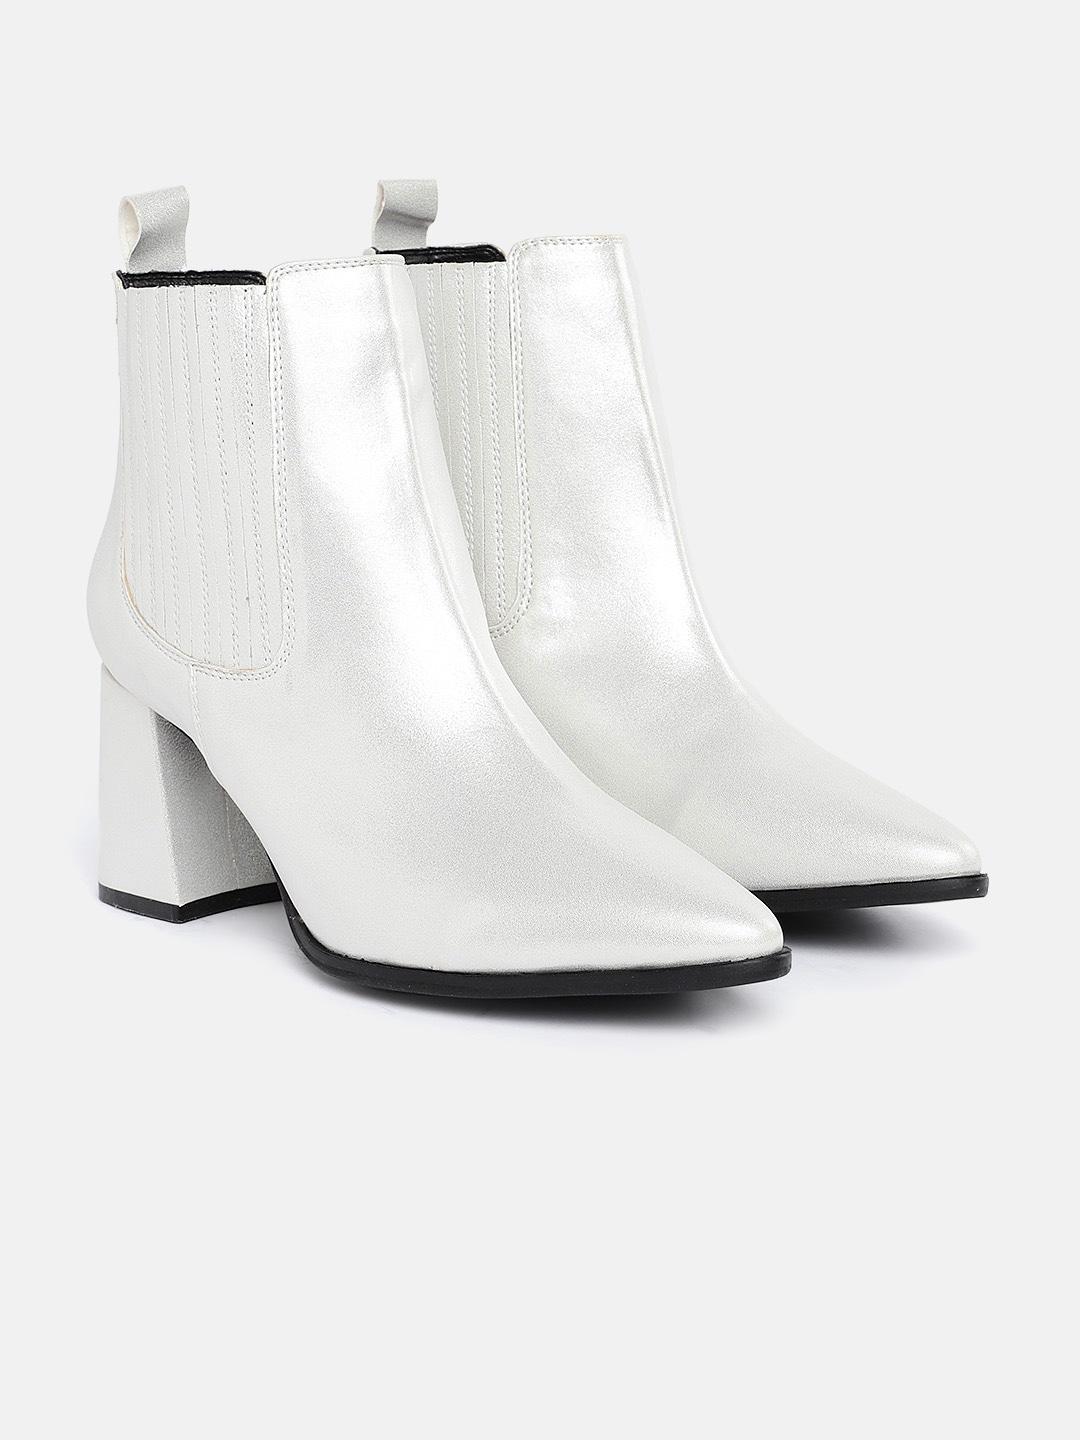 corsica women silver solid mid-top block heel chelsea boots